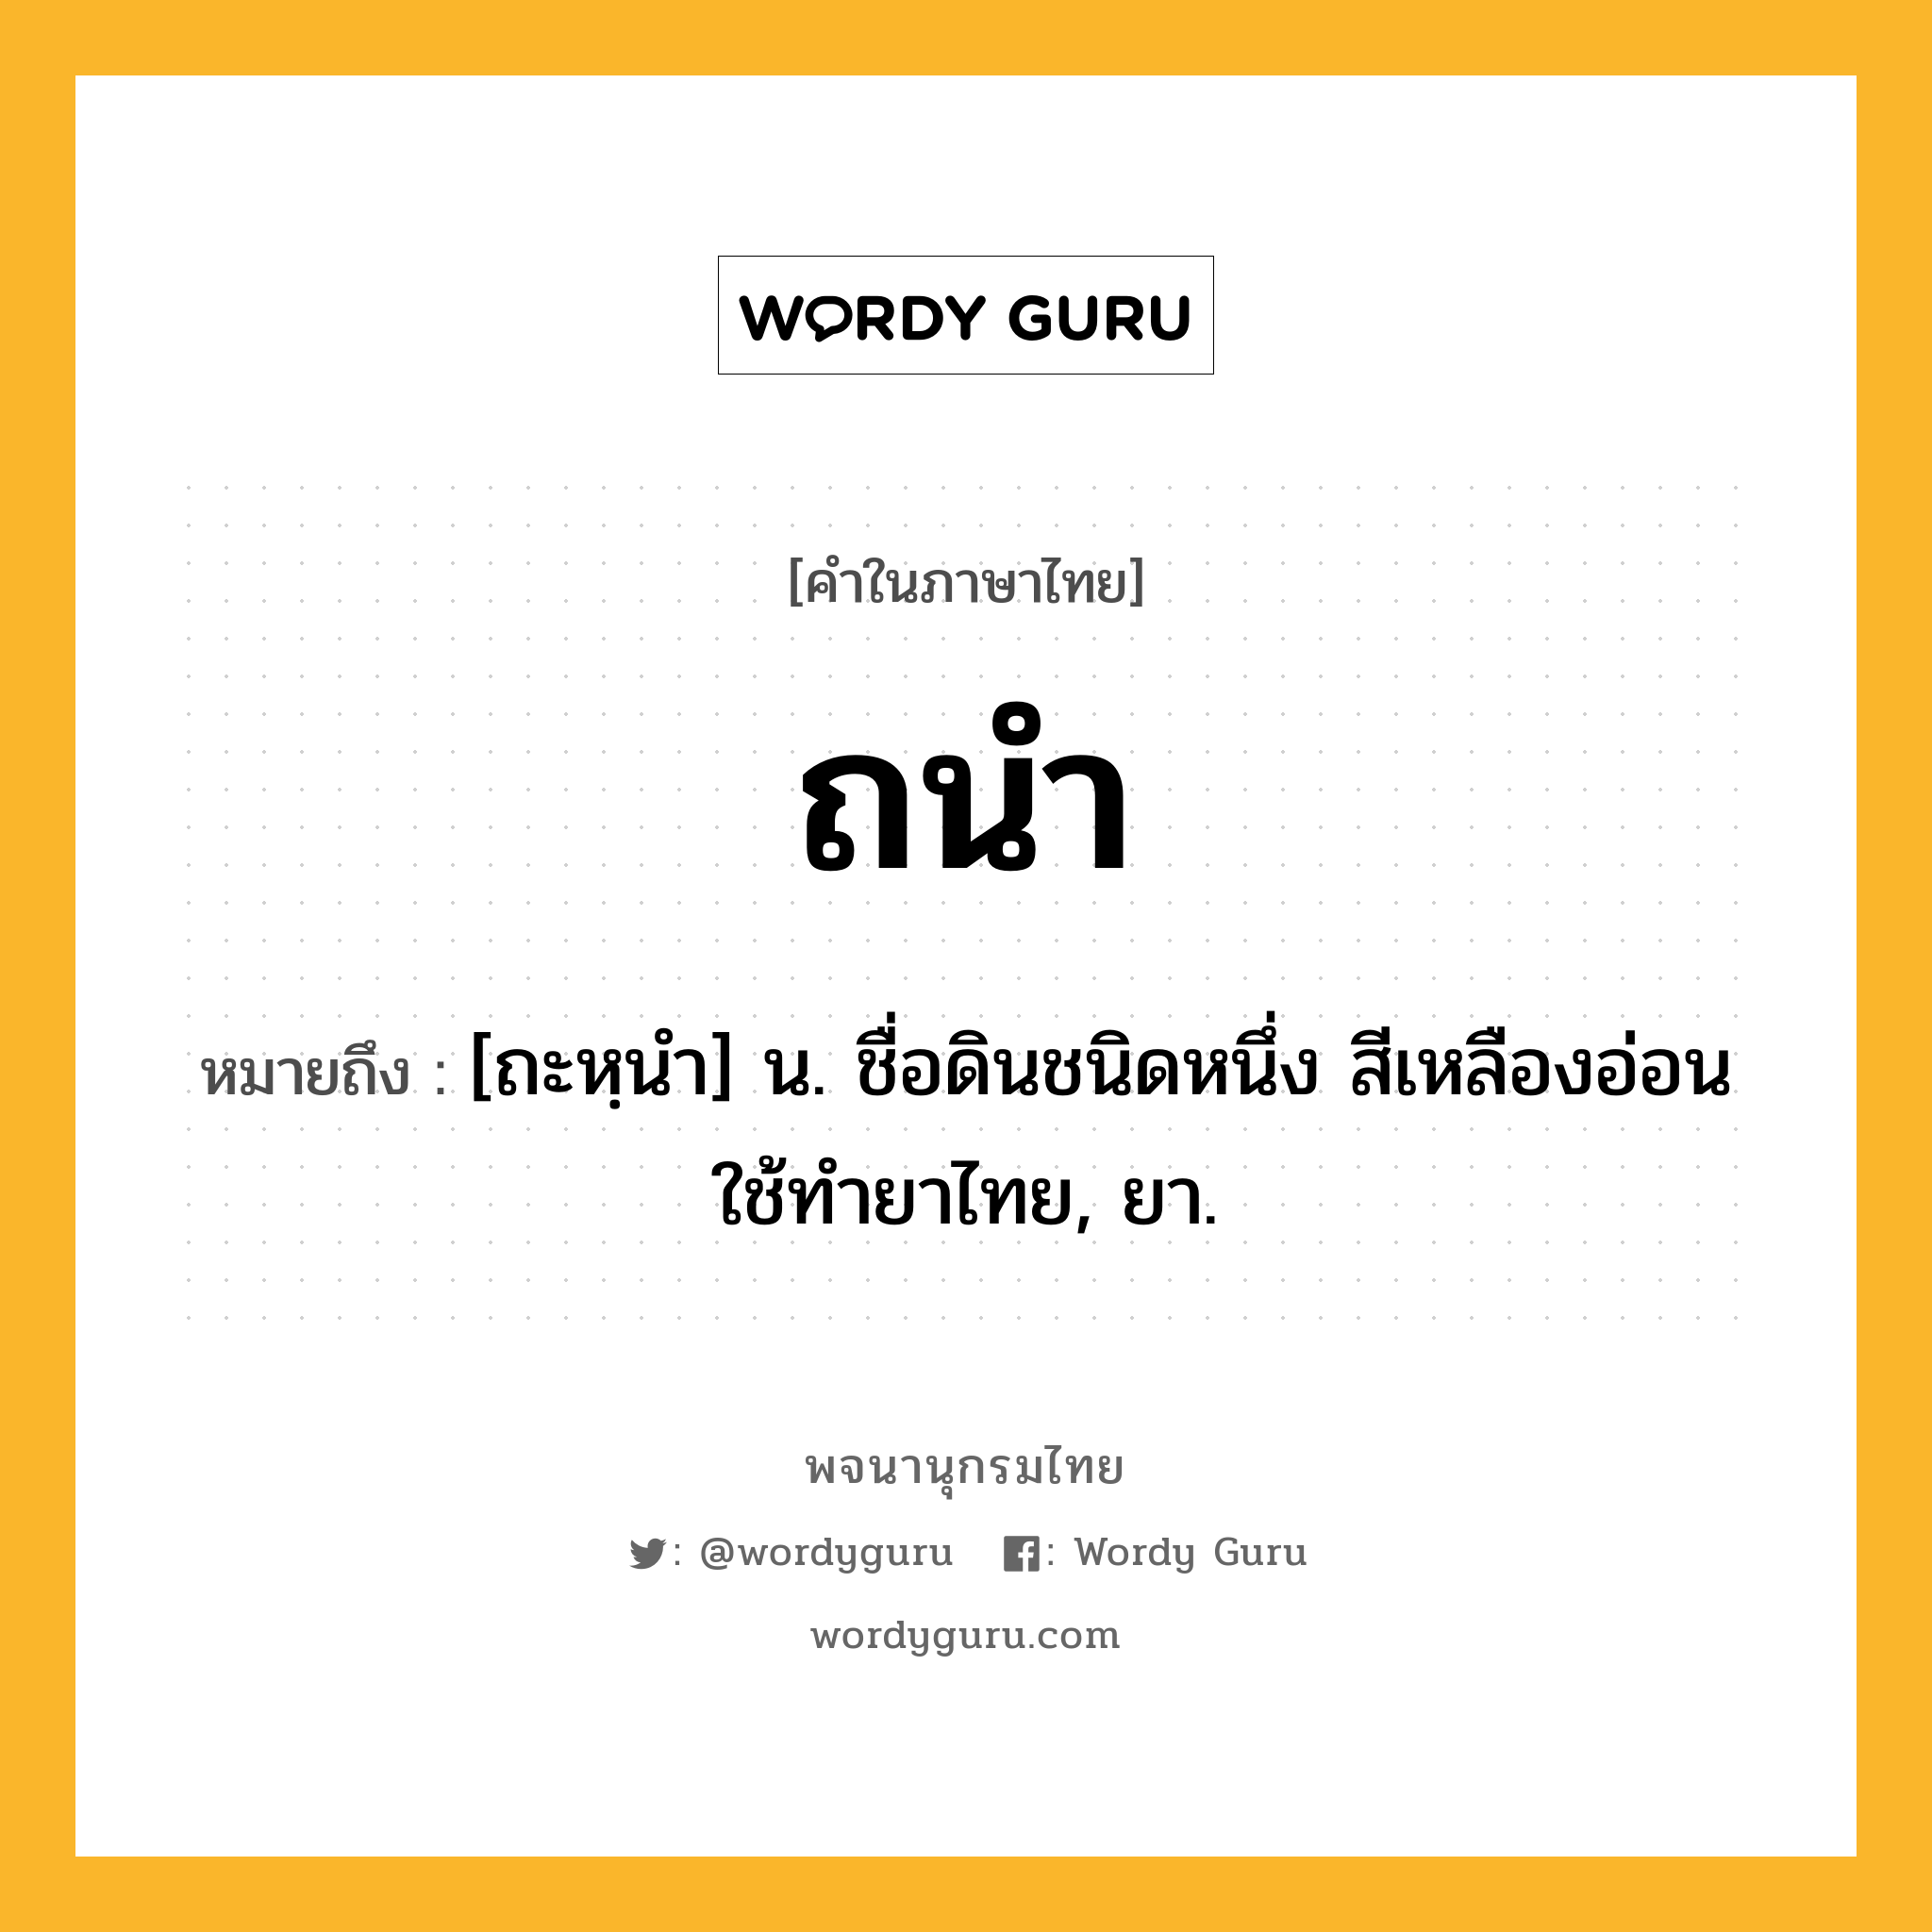 ถนำ ความหมาย หมายถึงอะไร?, คำในภาษาไทย ถนำ หมายถึง [ถะหฺนํา] น. ชื่อดินชนิดหนึ่ง สีเหลืองอ่อน ใช้ทํายาไทย, ยา.